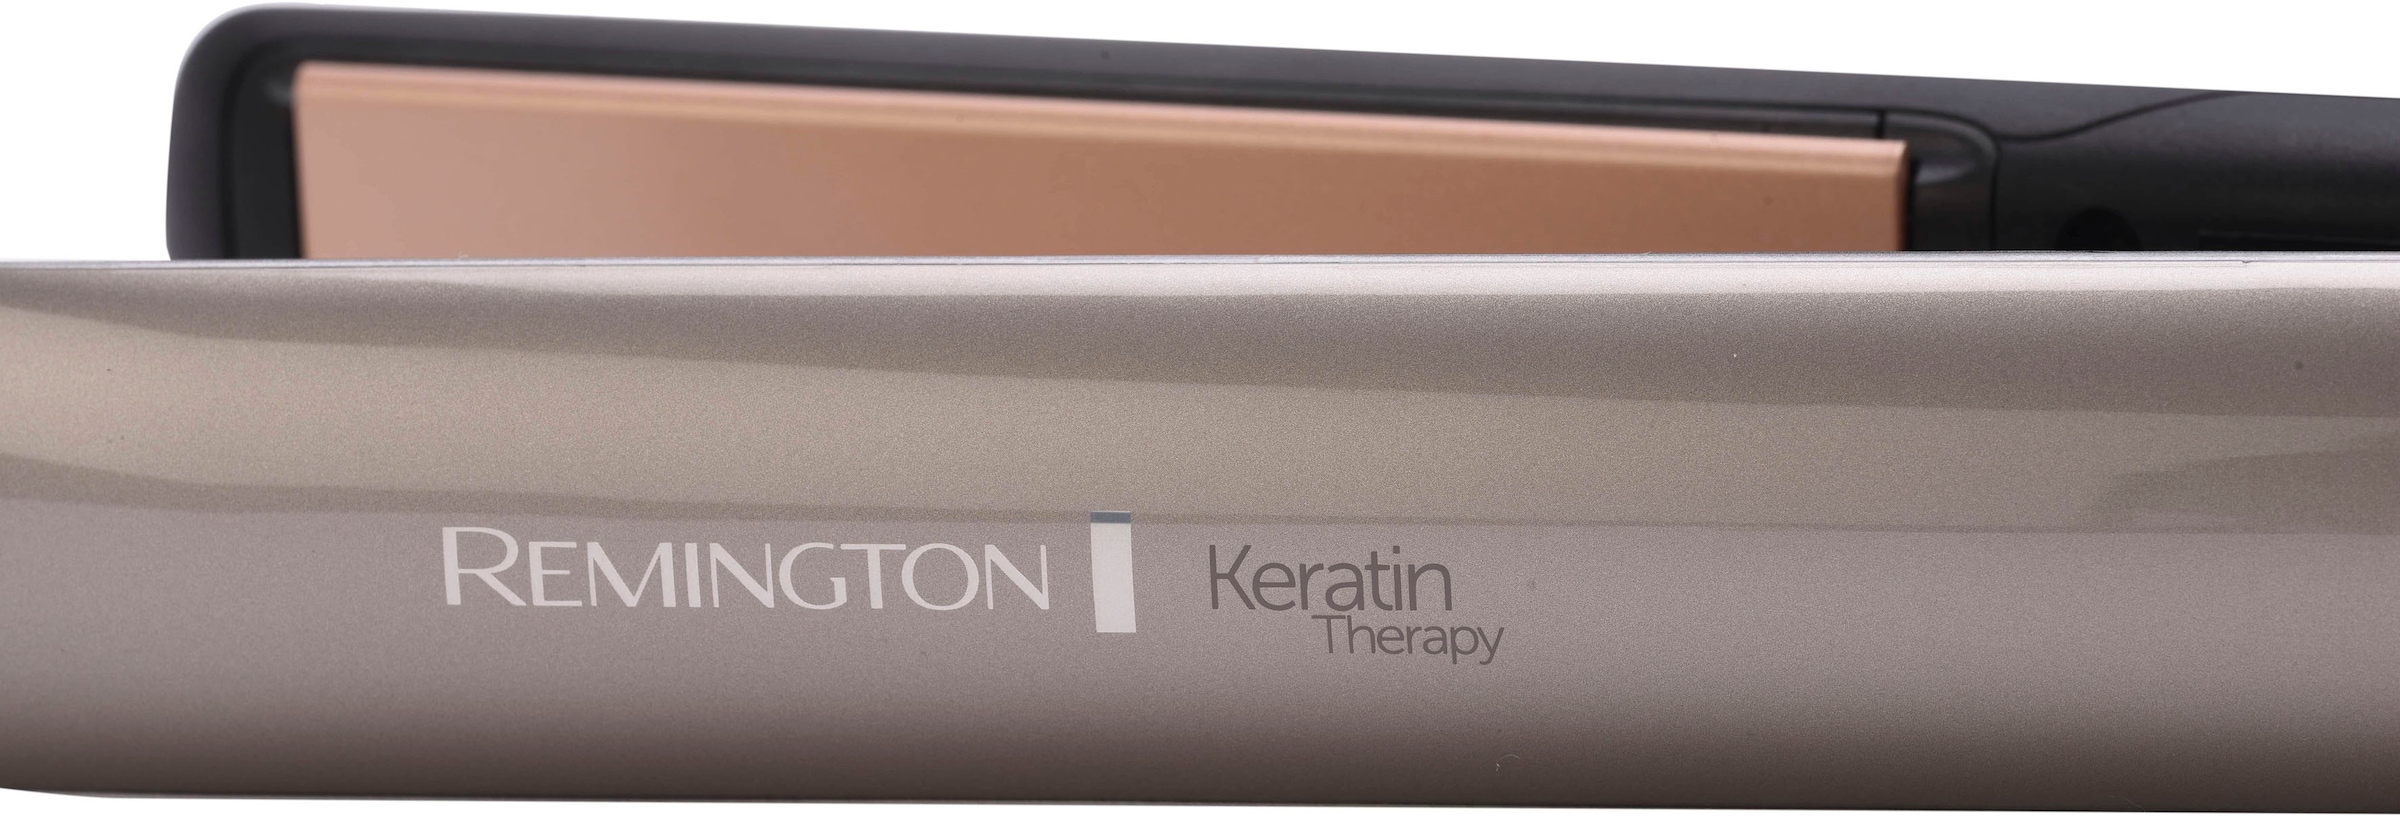 Therapy Keratin Remington »S8590«, Pro Glätteisen